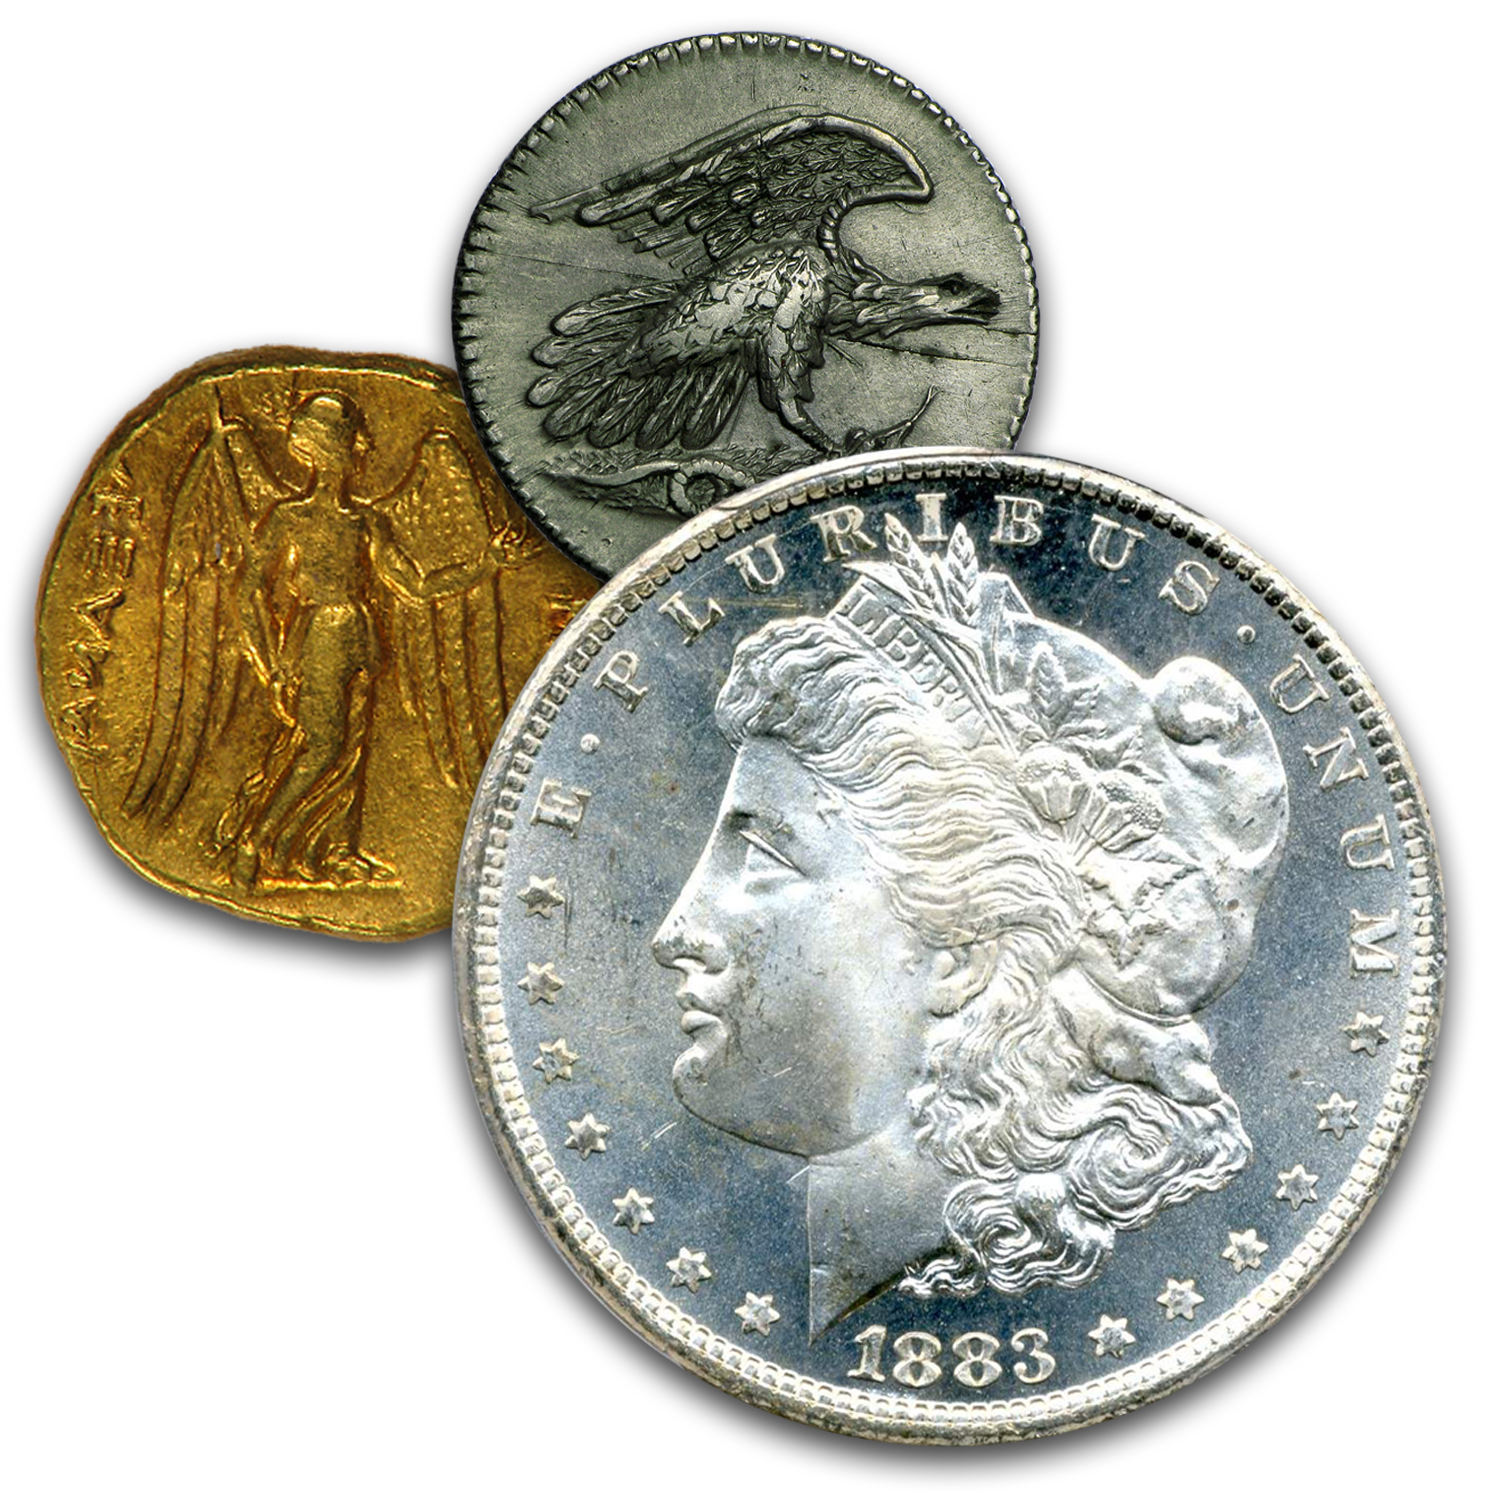 2022 Alderney Four Graces of HM Queen Elizabeth II 2oz Silver Coin PCGS PR  70 